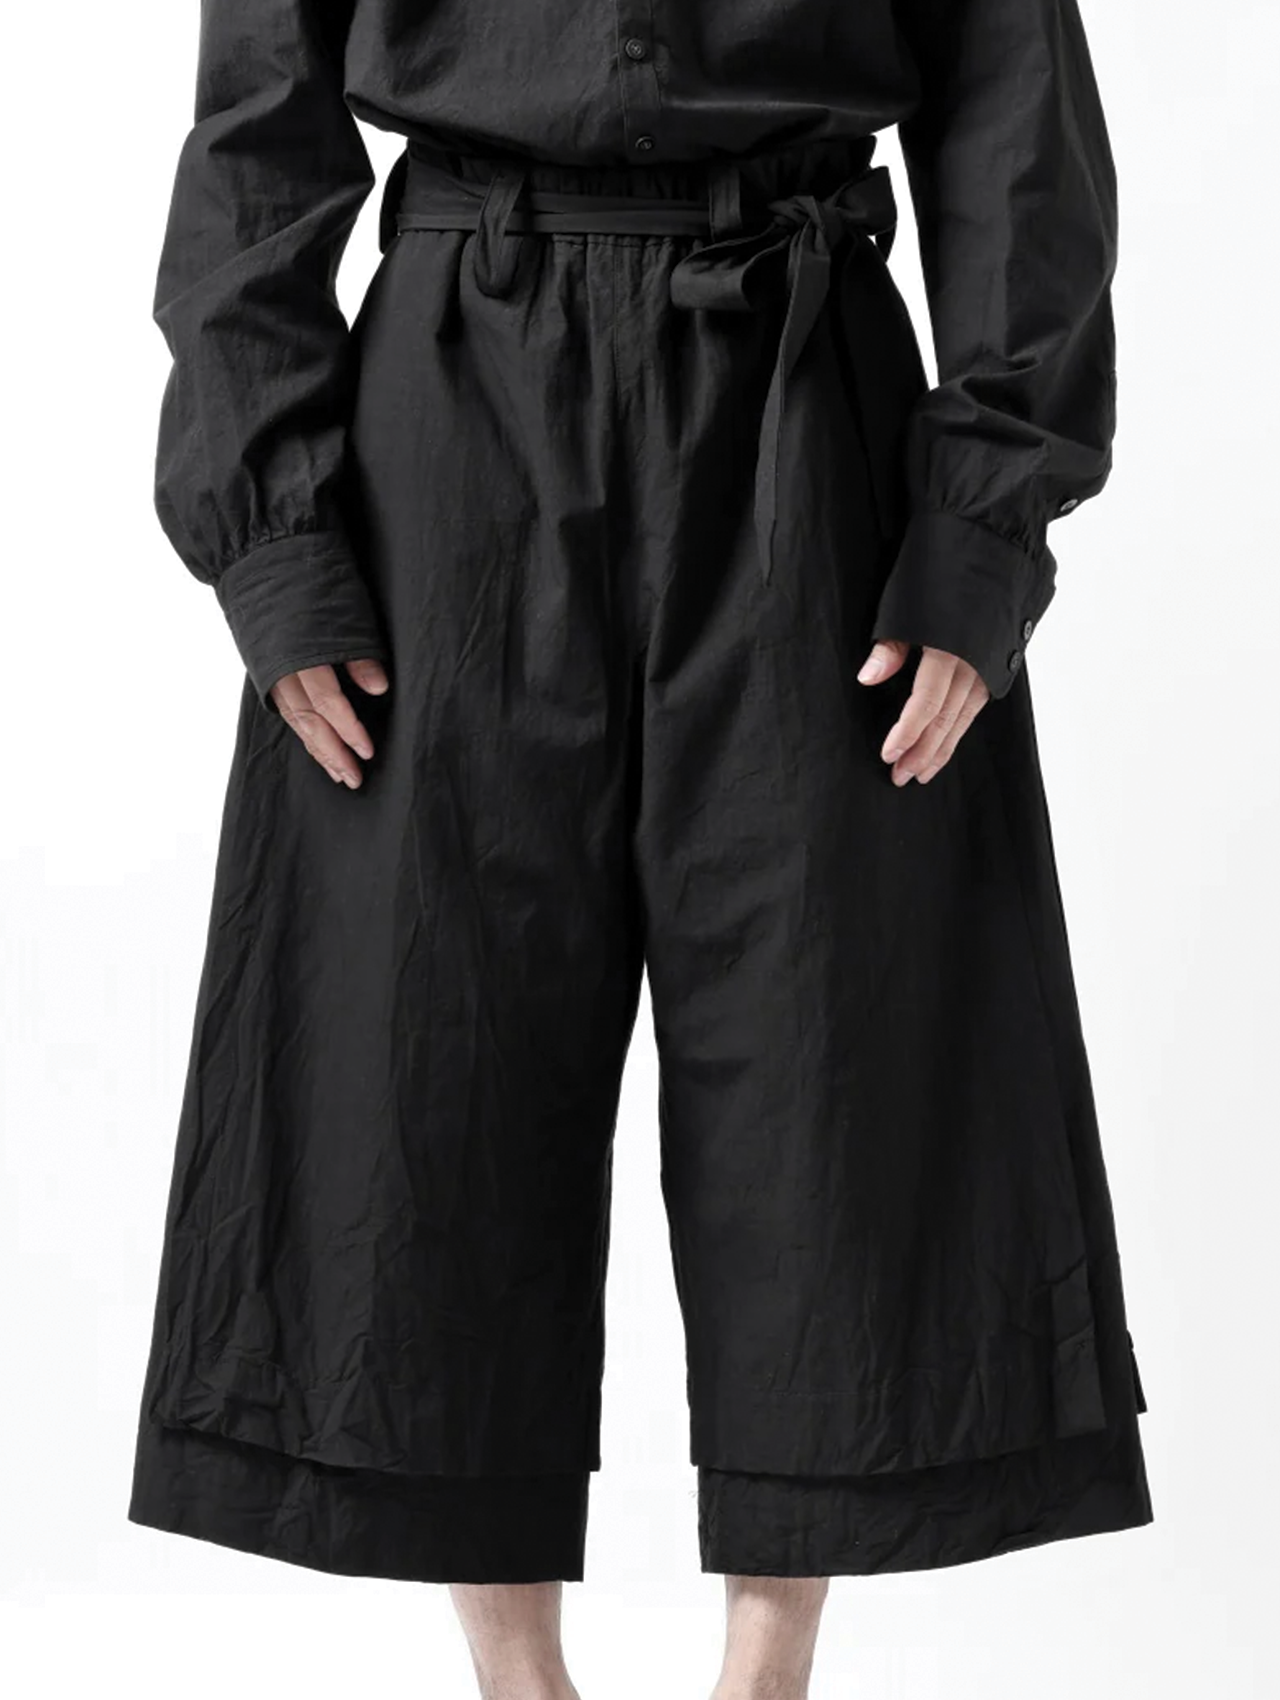 Klasica Black Cotton/Linen Cropped Pants